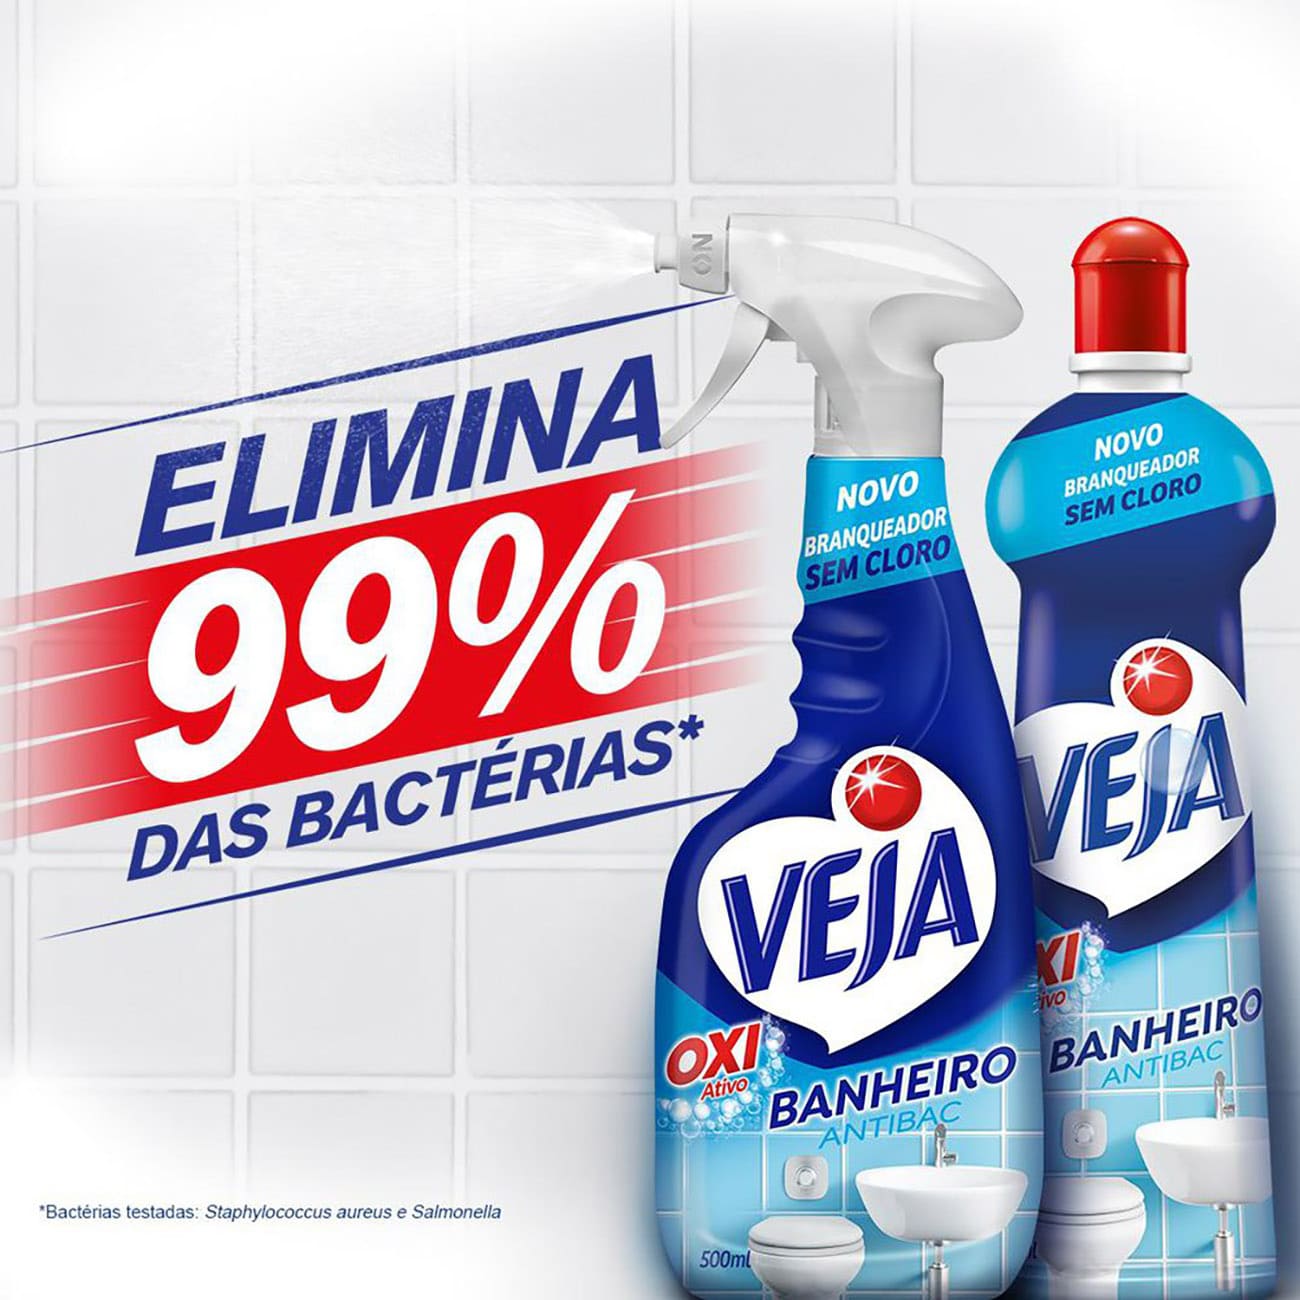 Limpador Banheiro Veja Antibac Oxi Ativo Spray 500mL com 30% de desconto